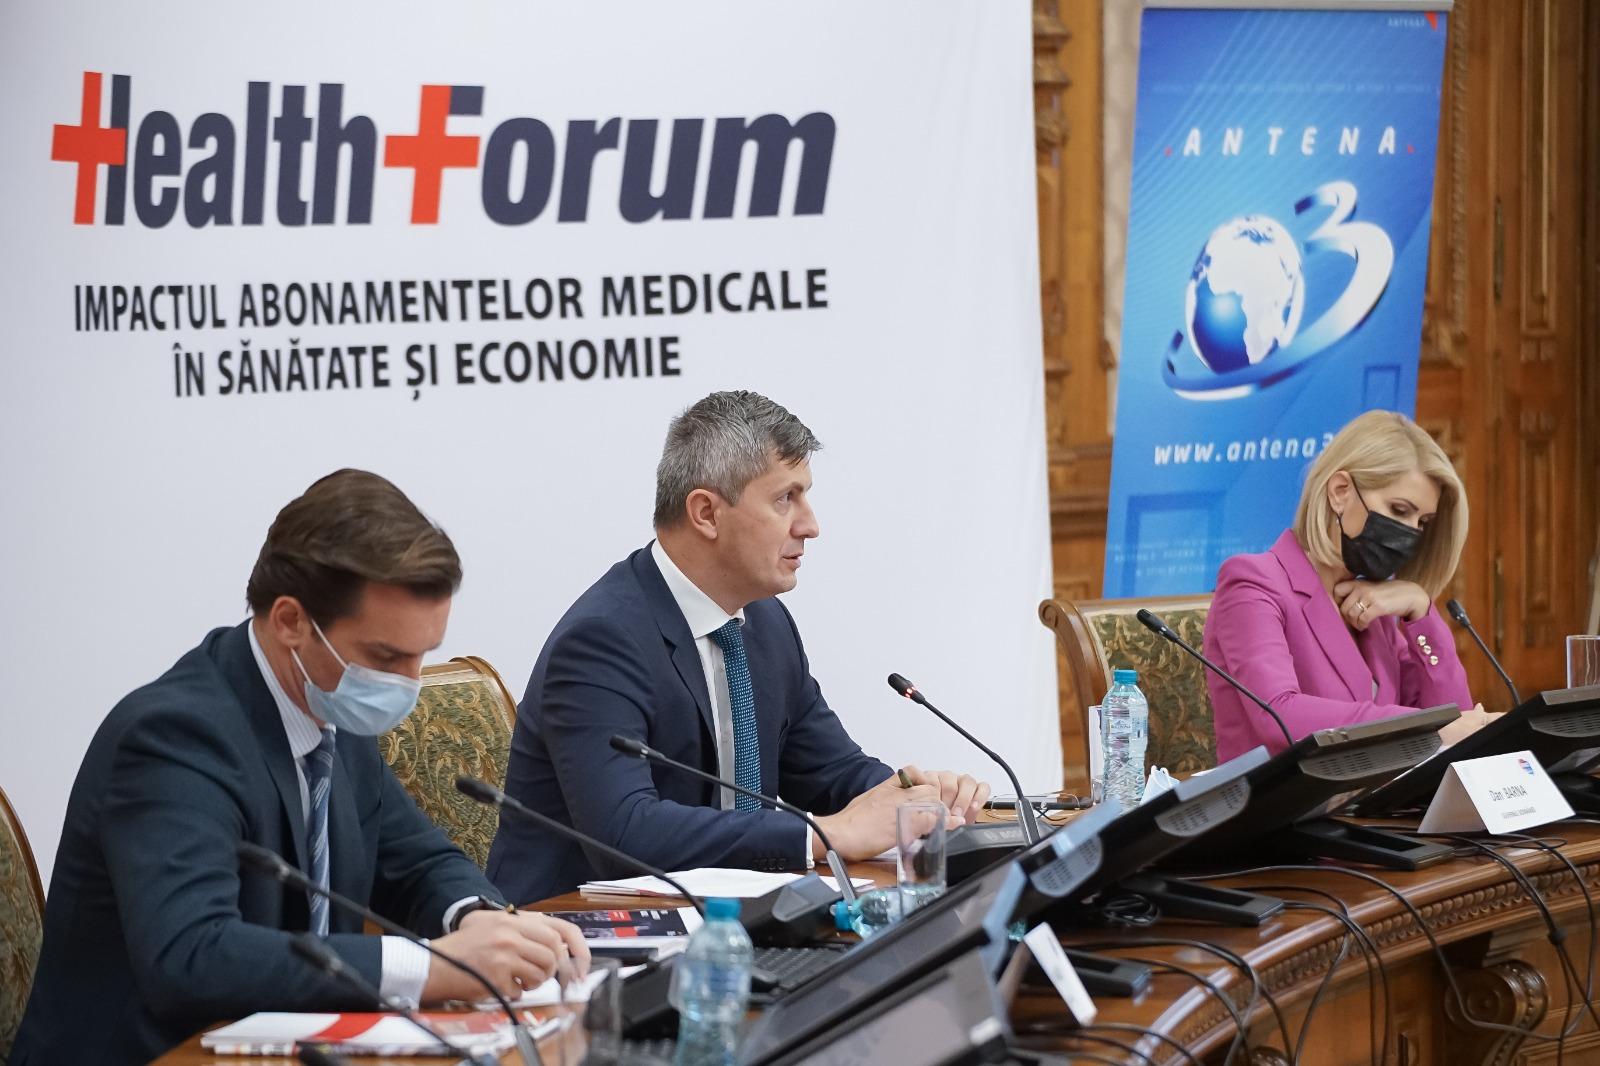 Health Forum - Impactul abonamentelor medicale în sănătate și economie